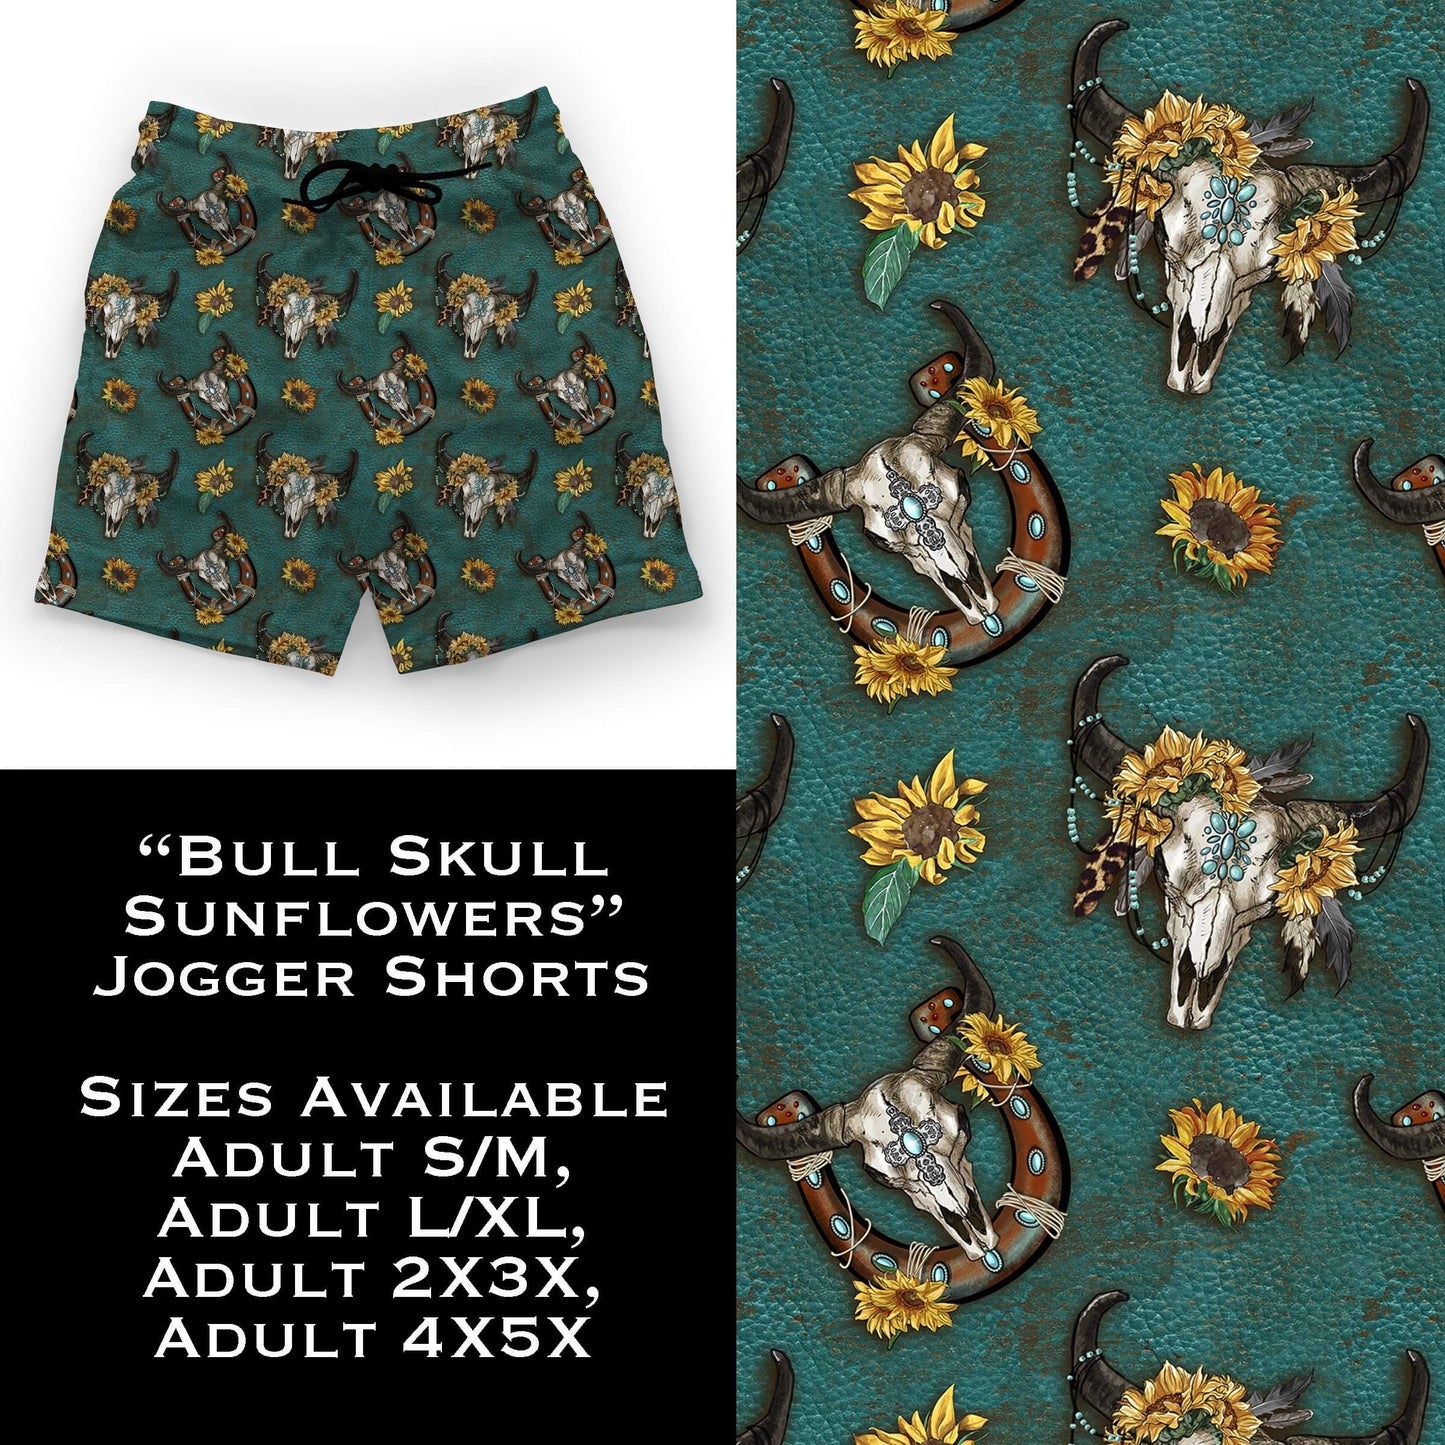 Bull Skull Sunflowers Jogger Shorts